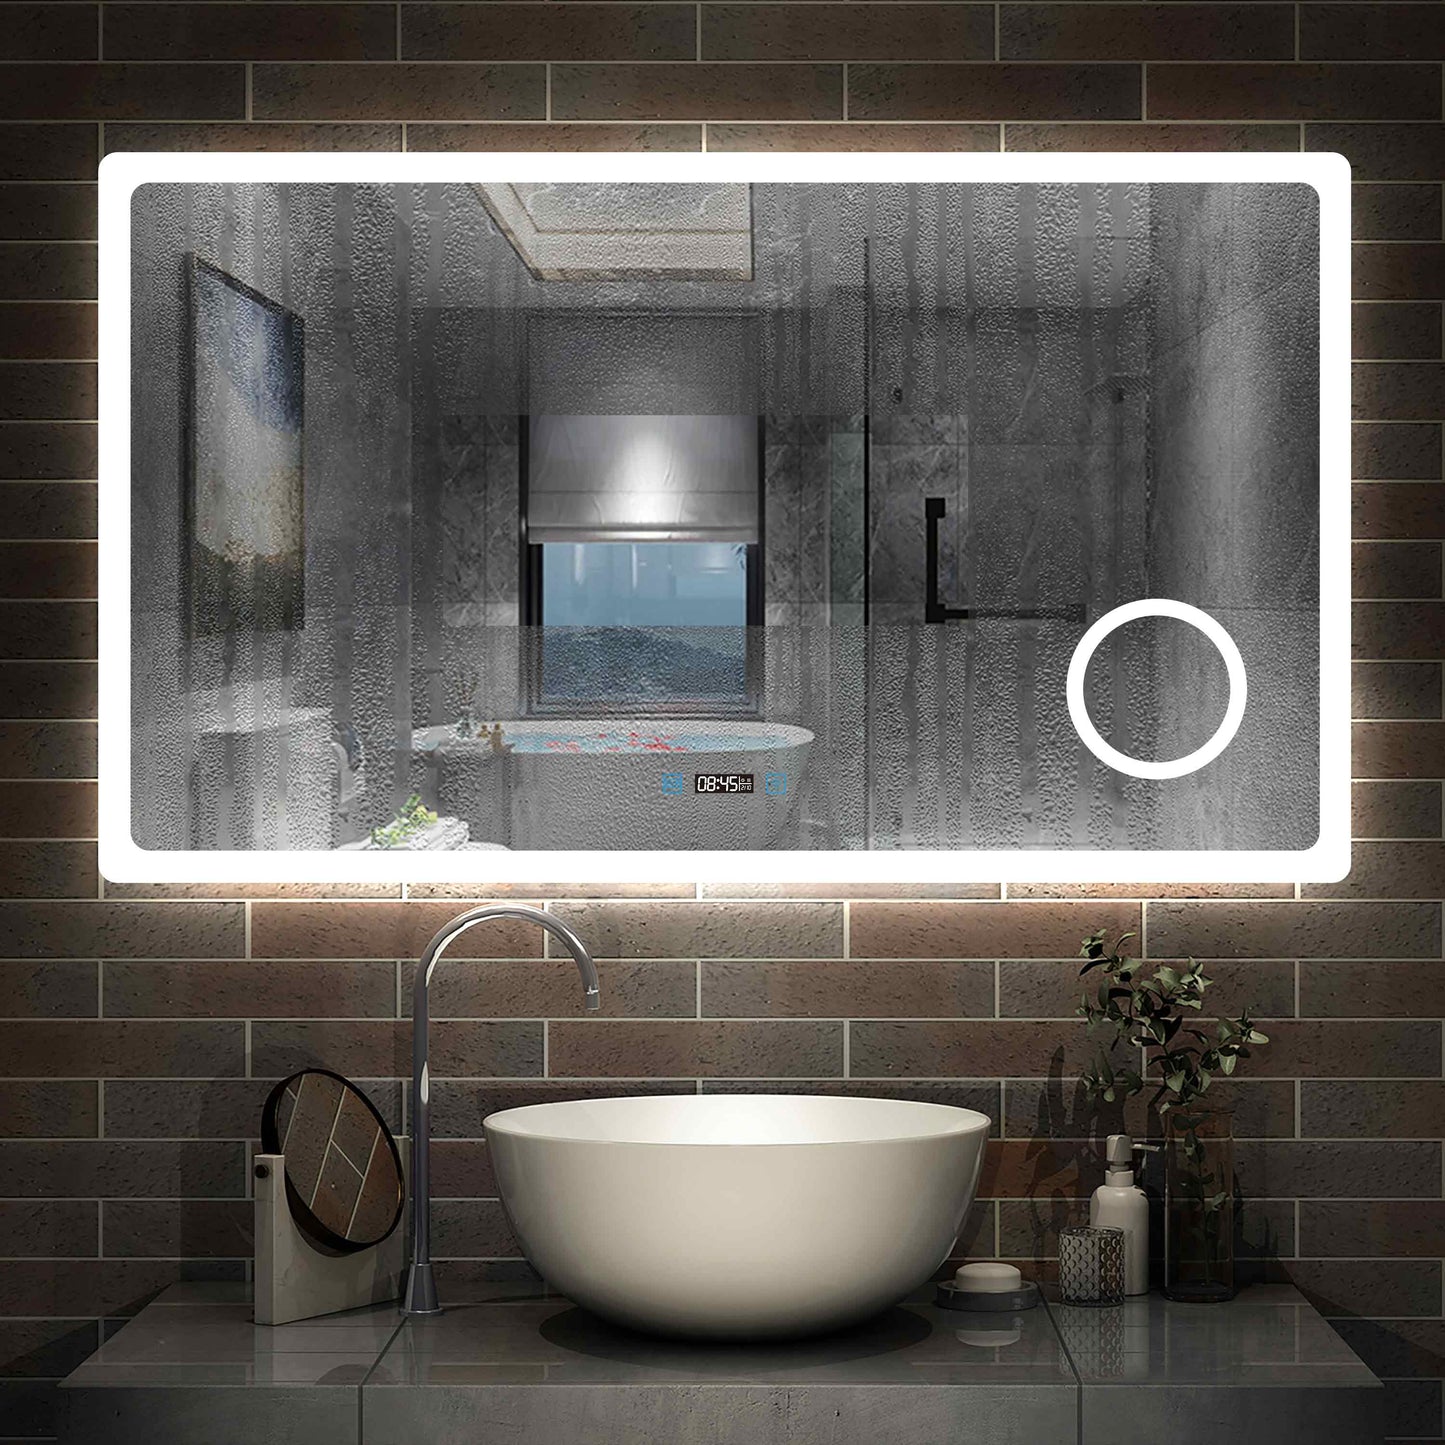 Miroir intelligent pour salle de bain éclairage LED, avec hauts-parleurs bluetooth